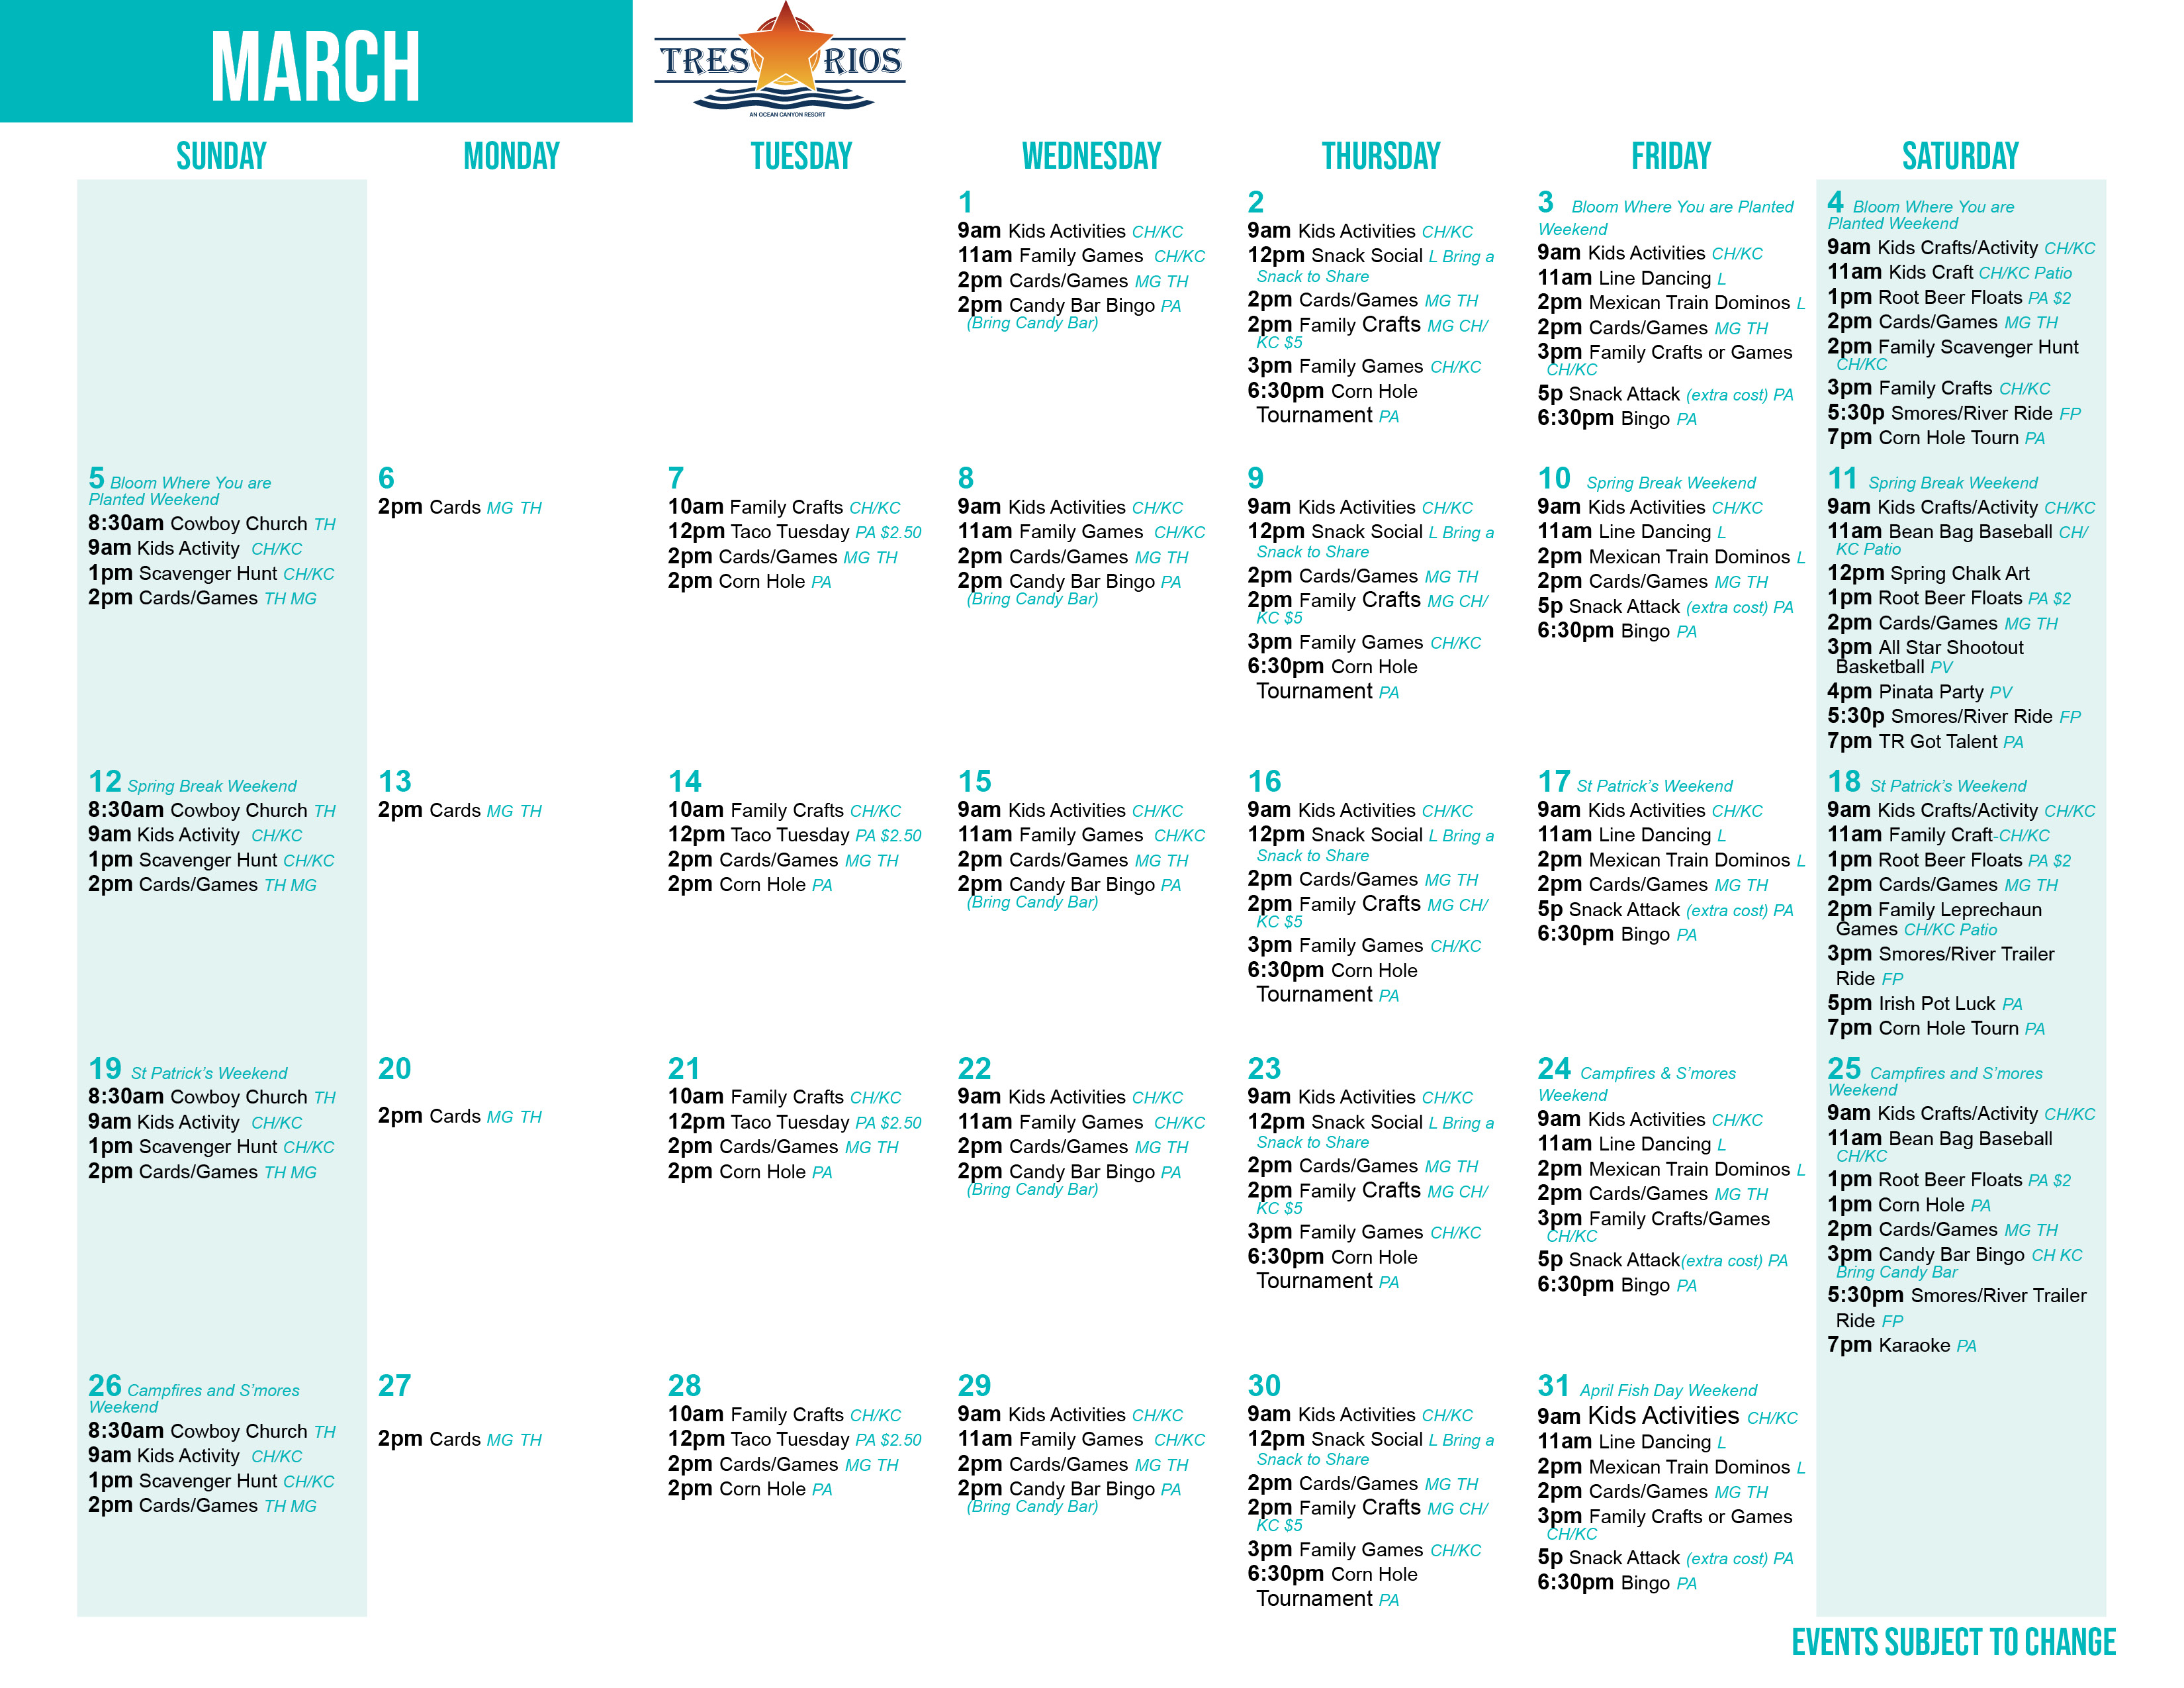 Tres Rios' March Activity Calendar